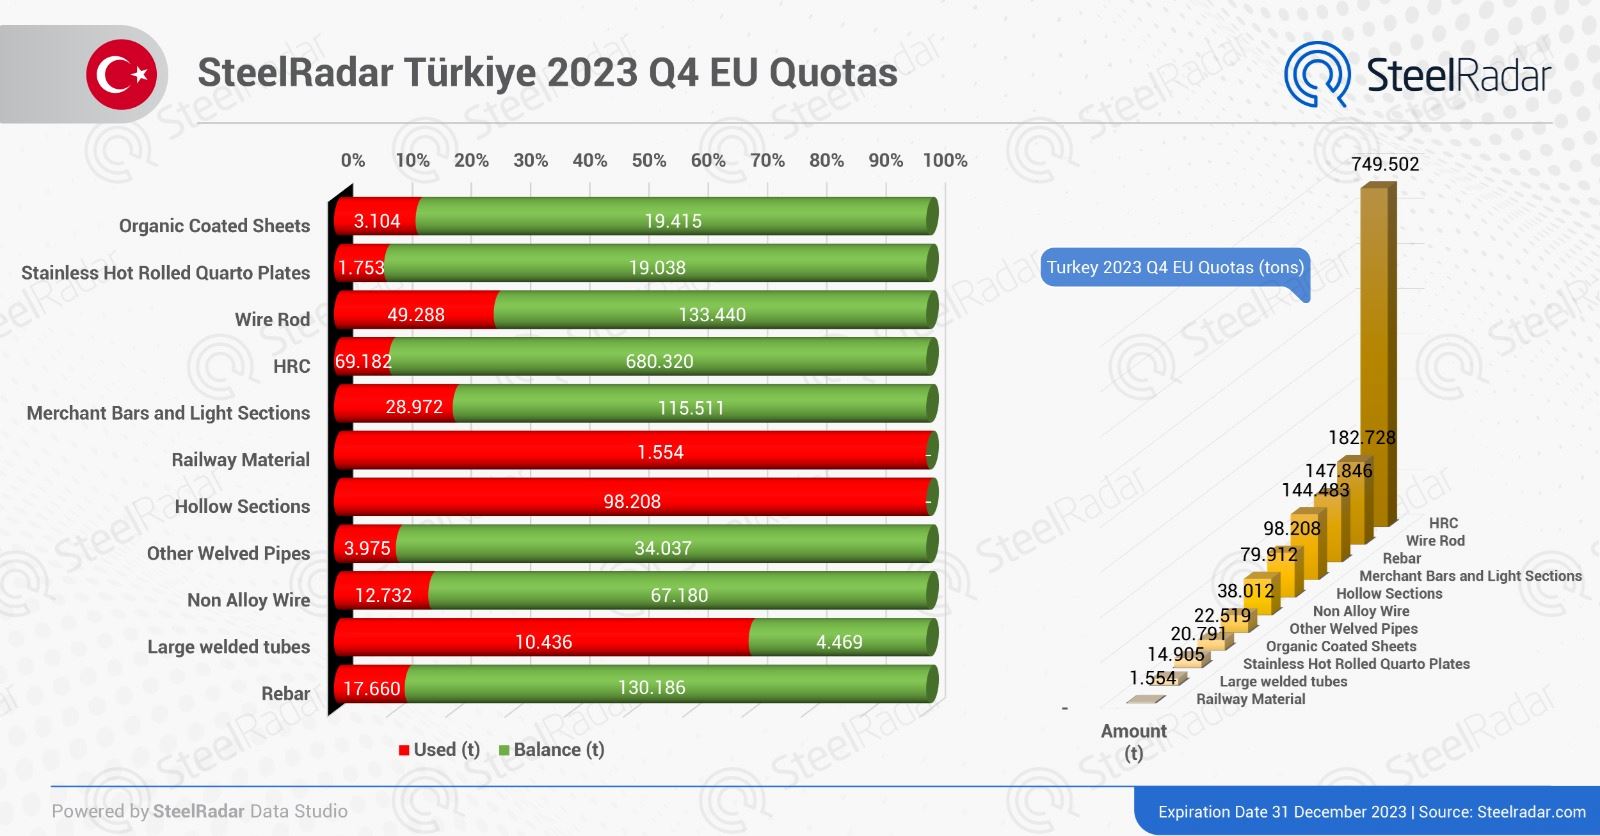 Türkiye increases steel quota occupancy rates